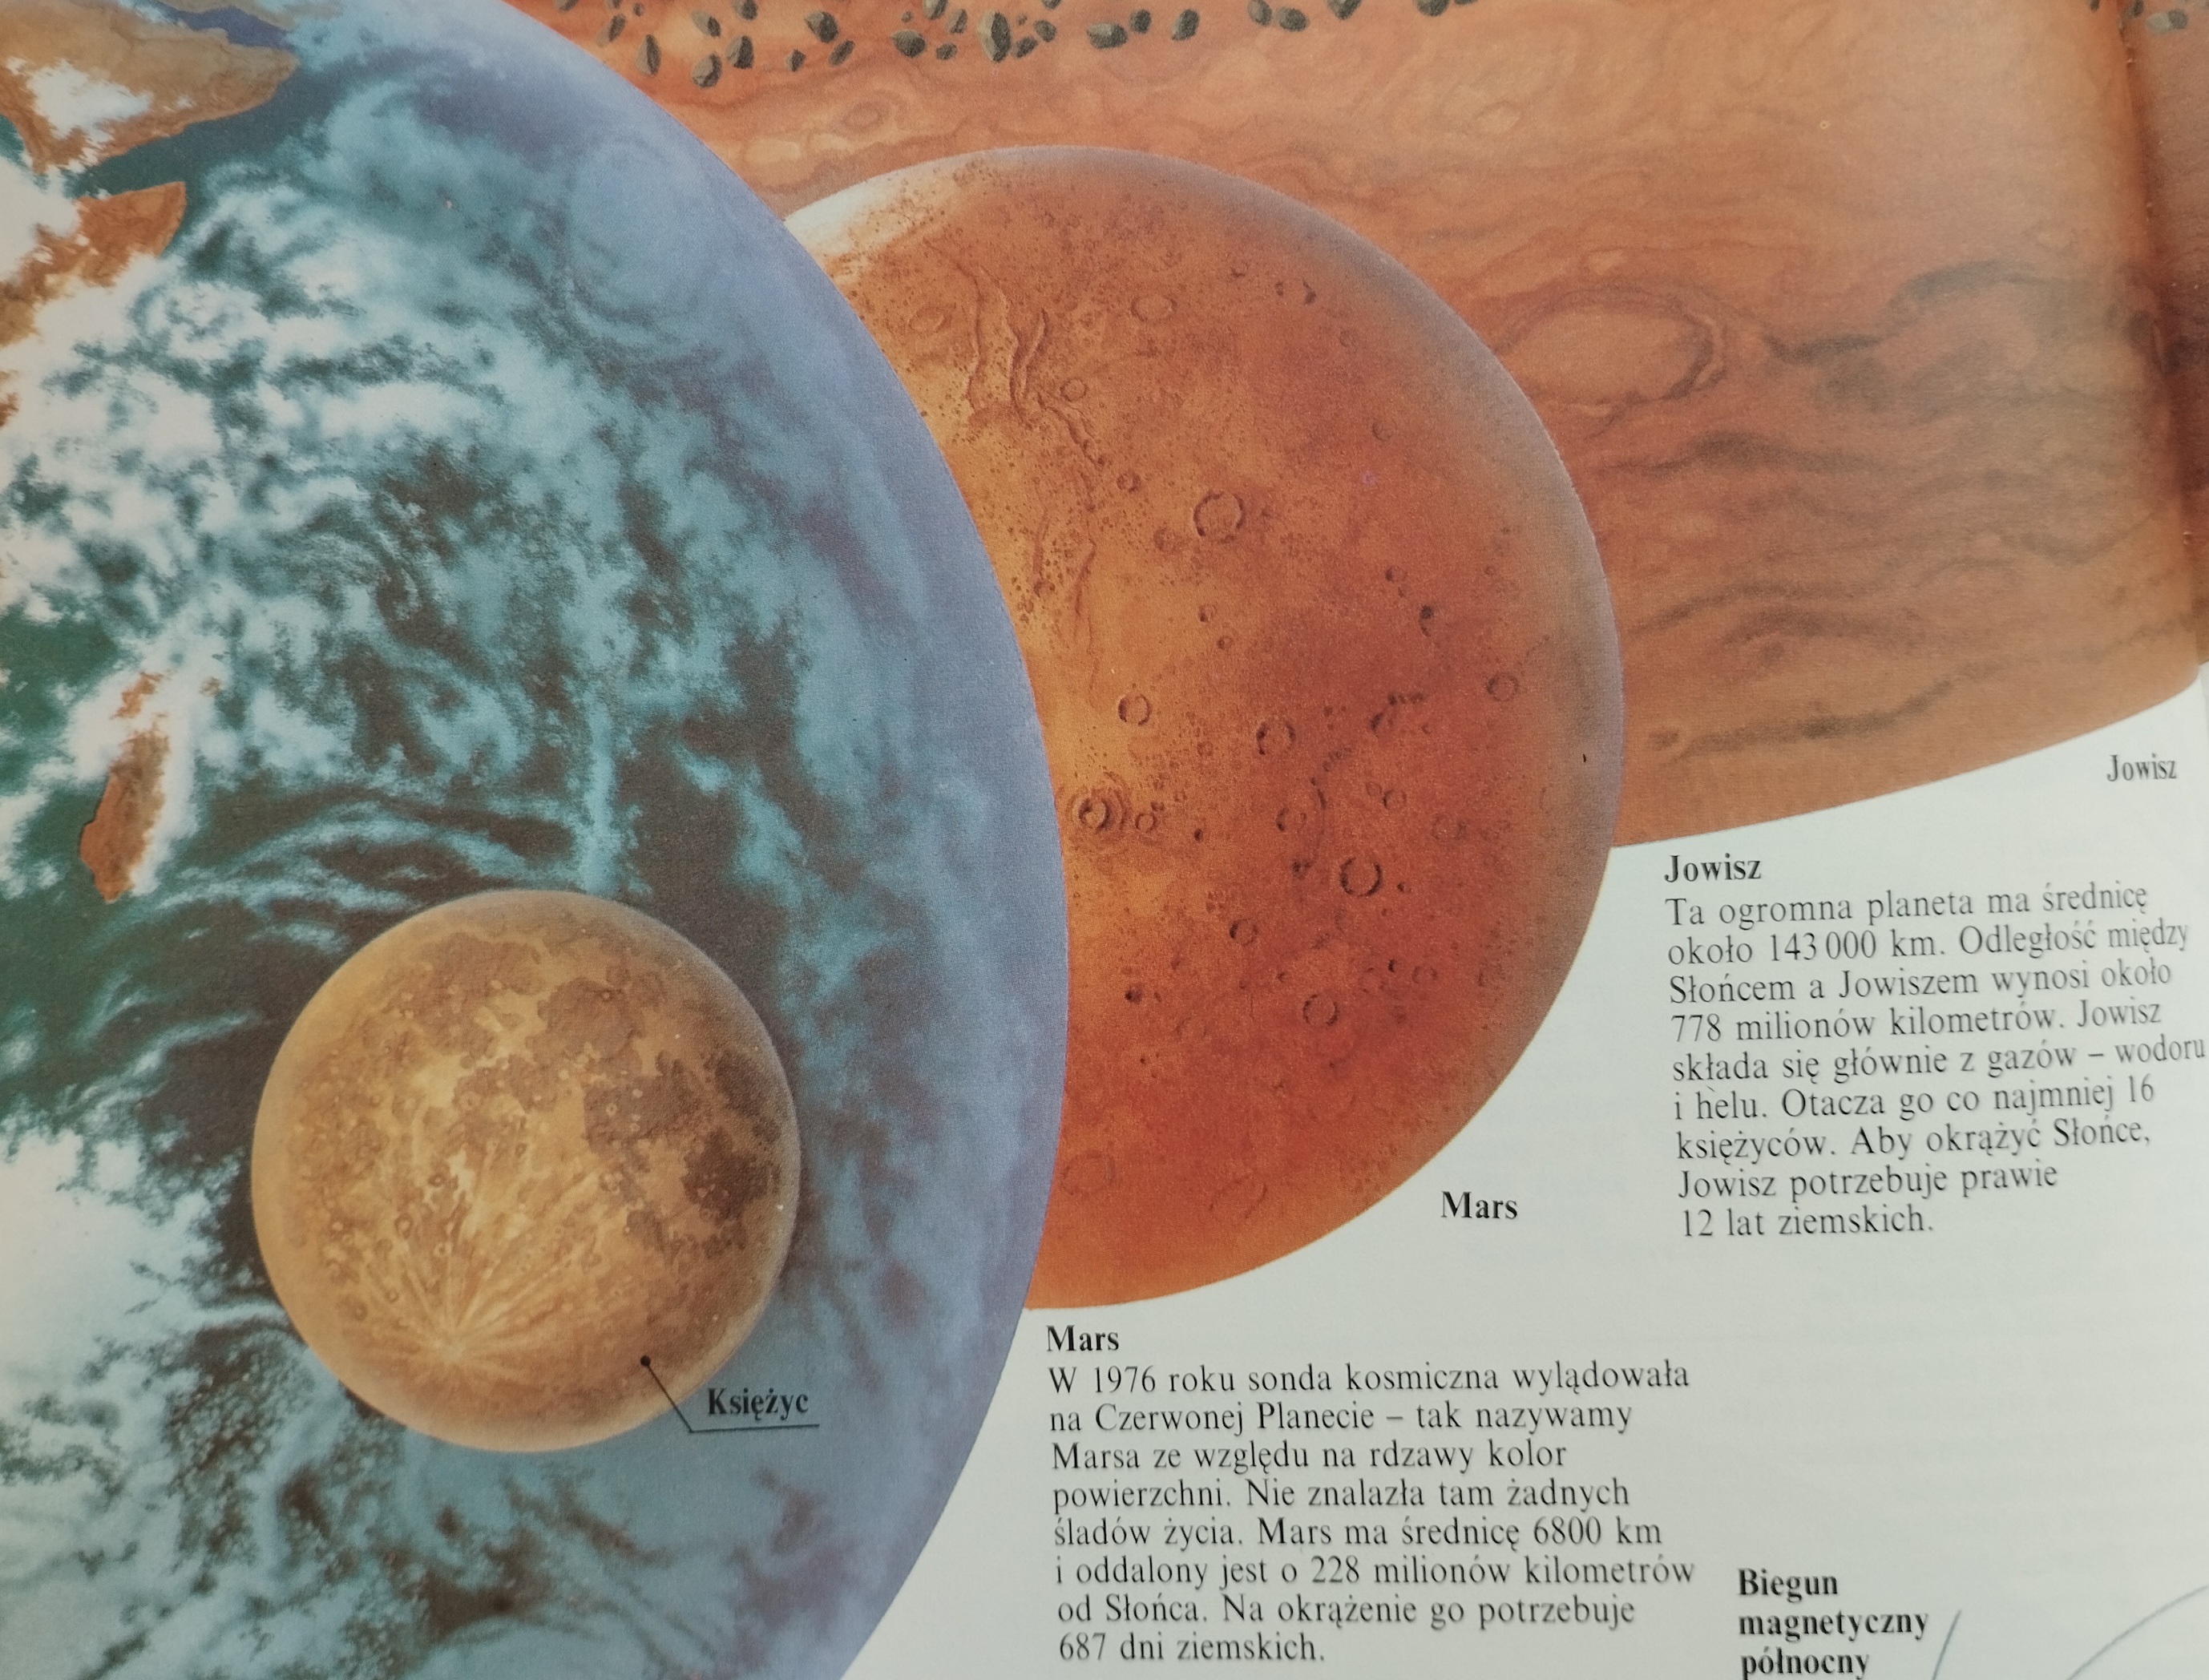 Mars wśród planet układu sonecznego - ilustracja ze szkolnego podrecznika klasy 3.